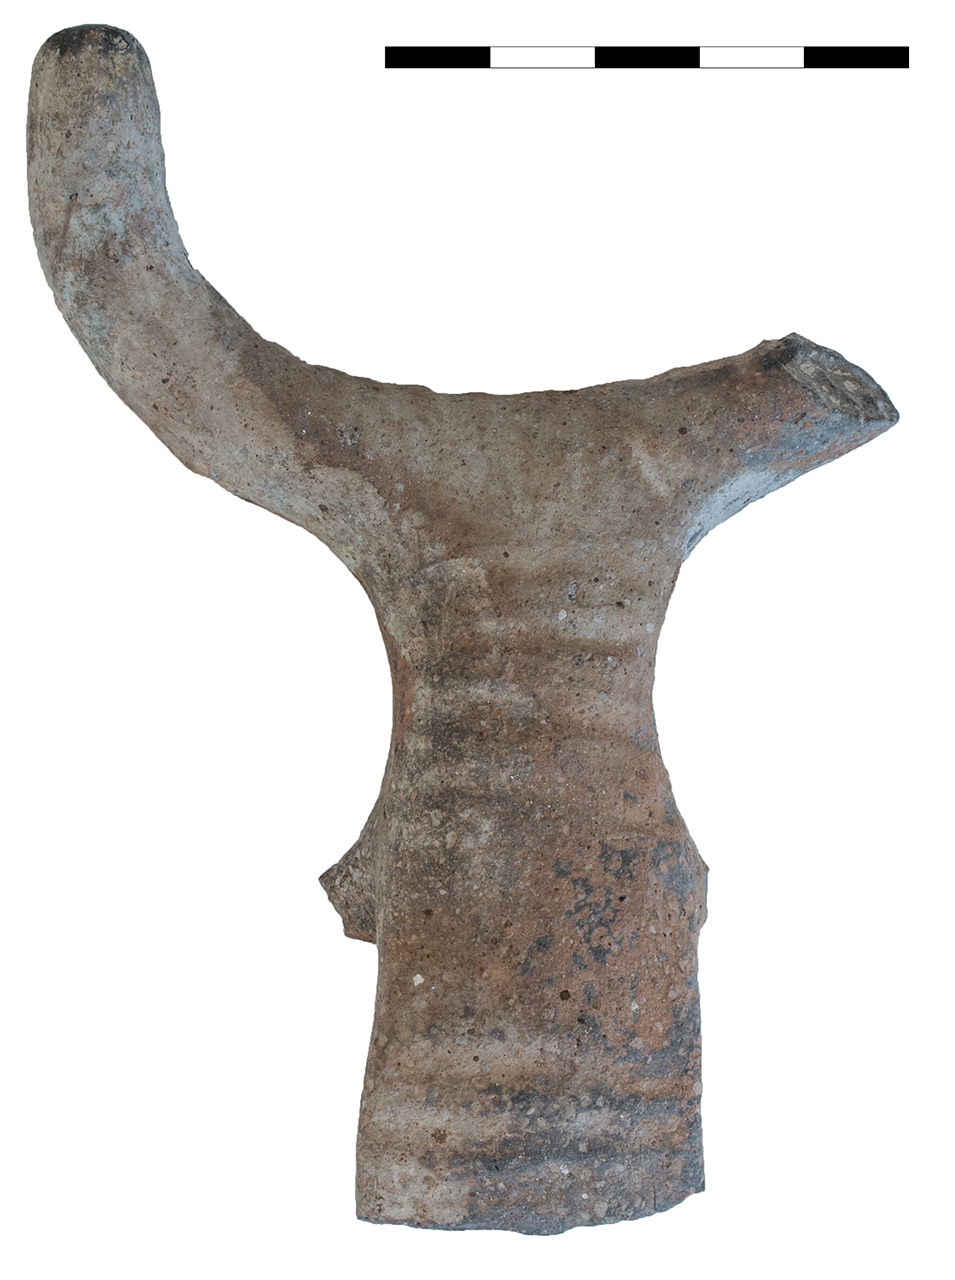 recipiente/ ansa, a nastro con sopraelevazione cornuta (età del bronzo recente-finale)